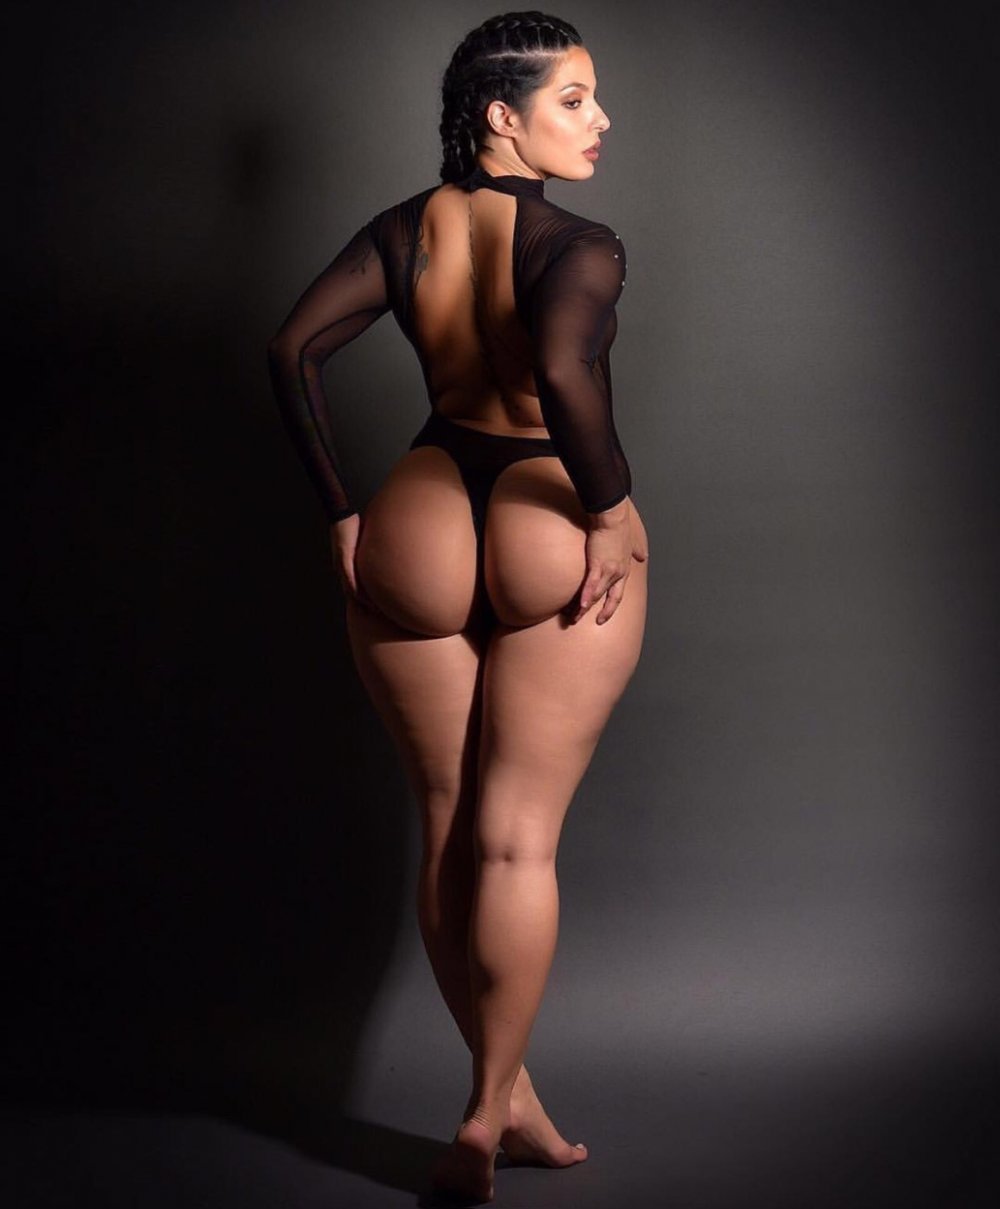 Big Latin Ass Naked - Big Booty Latina - 27 photos